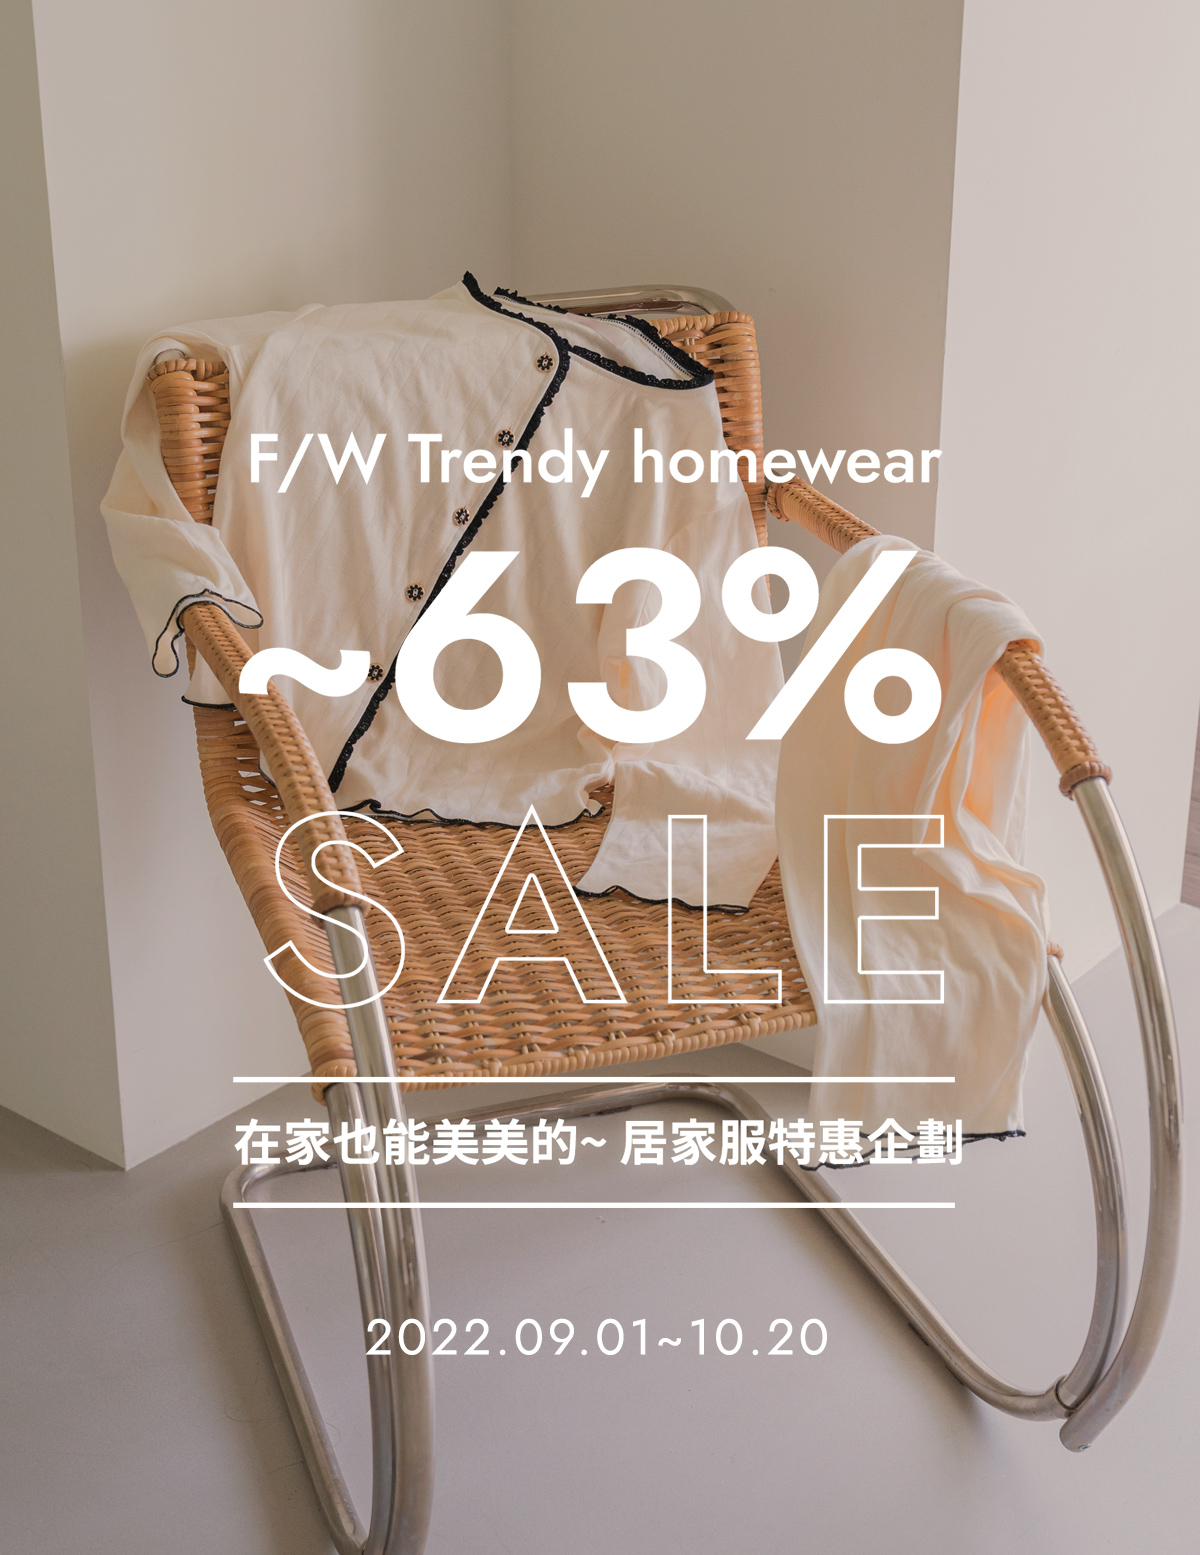 F/W Trendy homewear ~63% sale